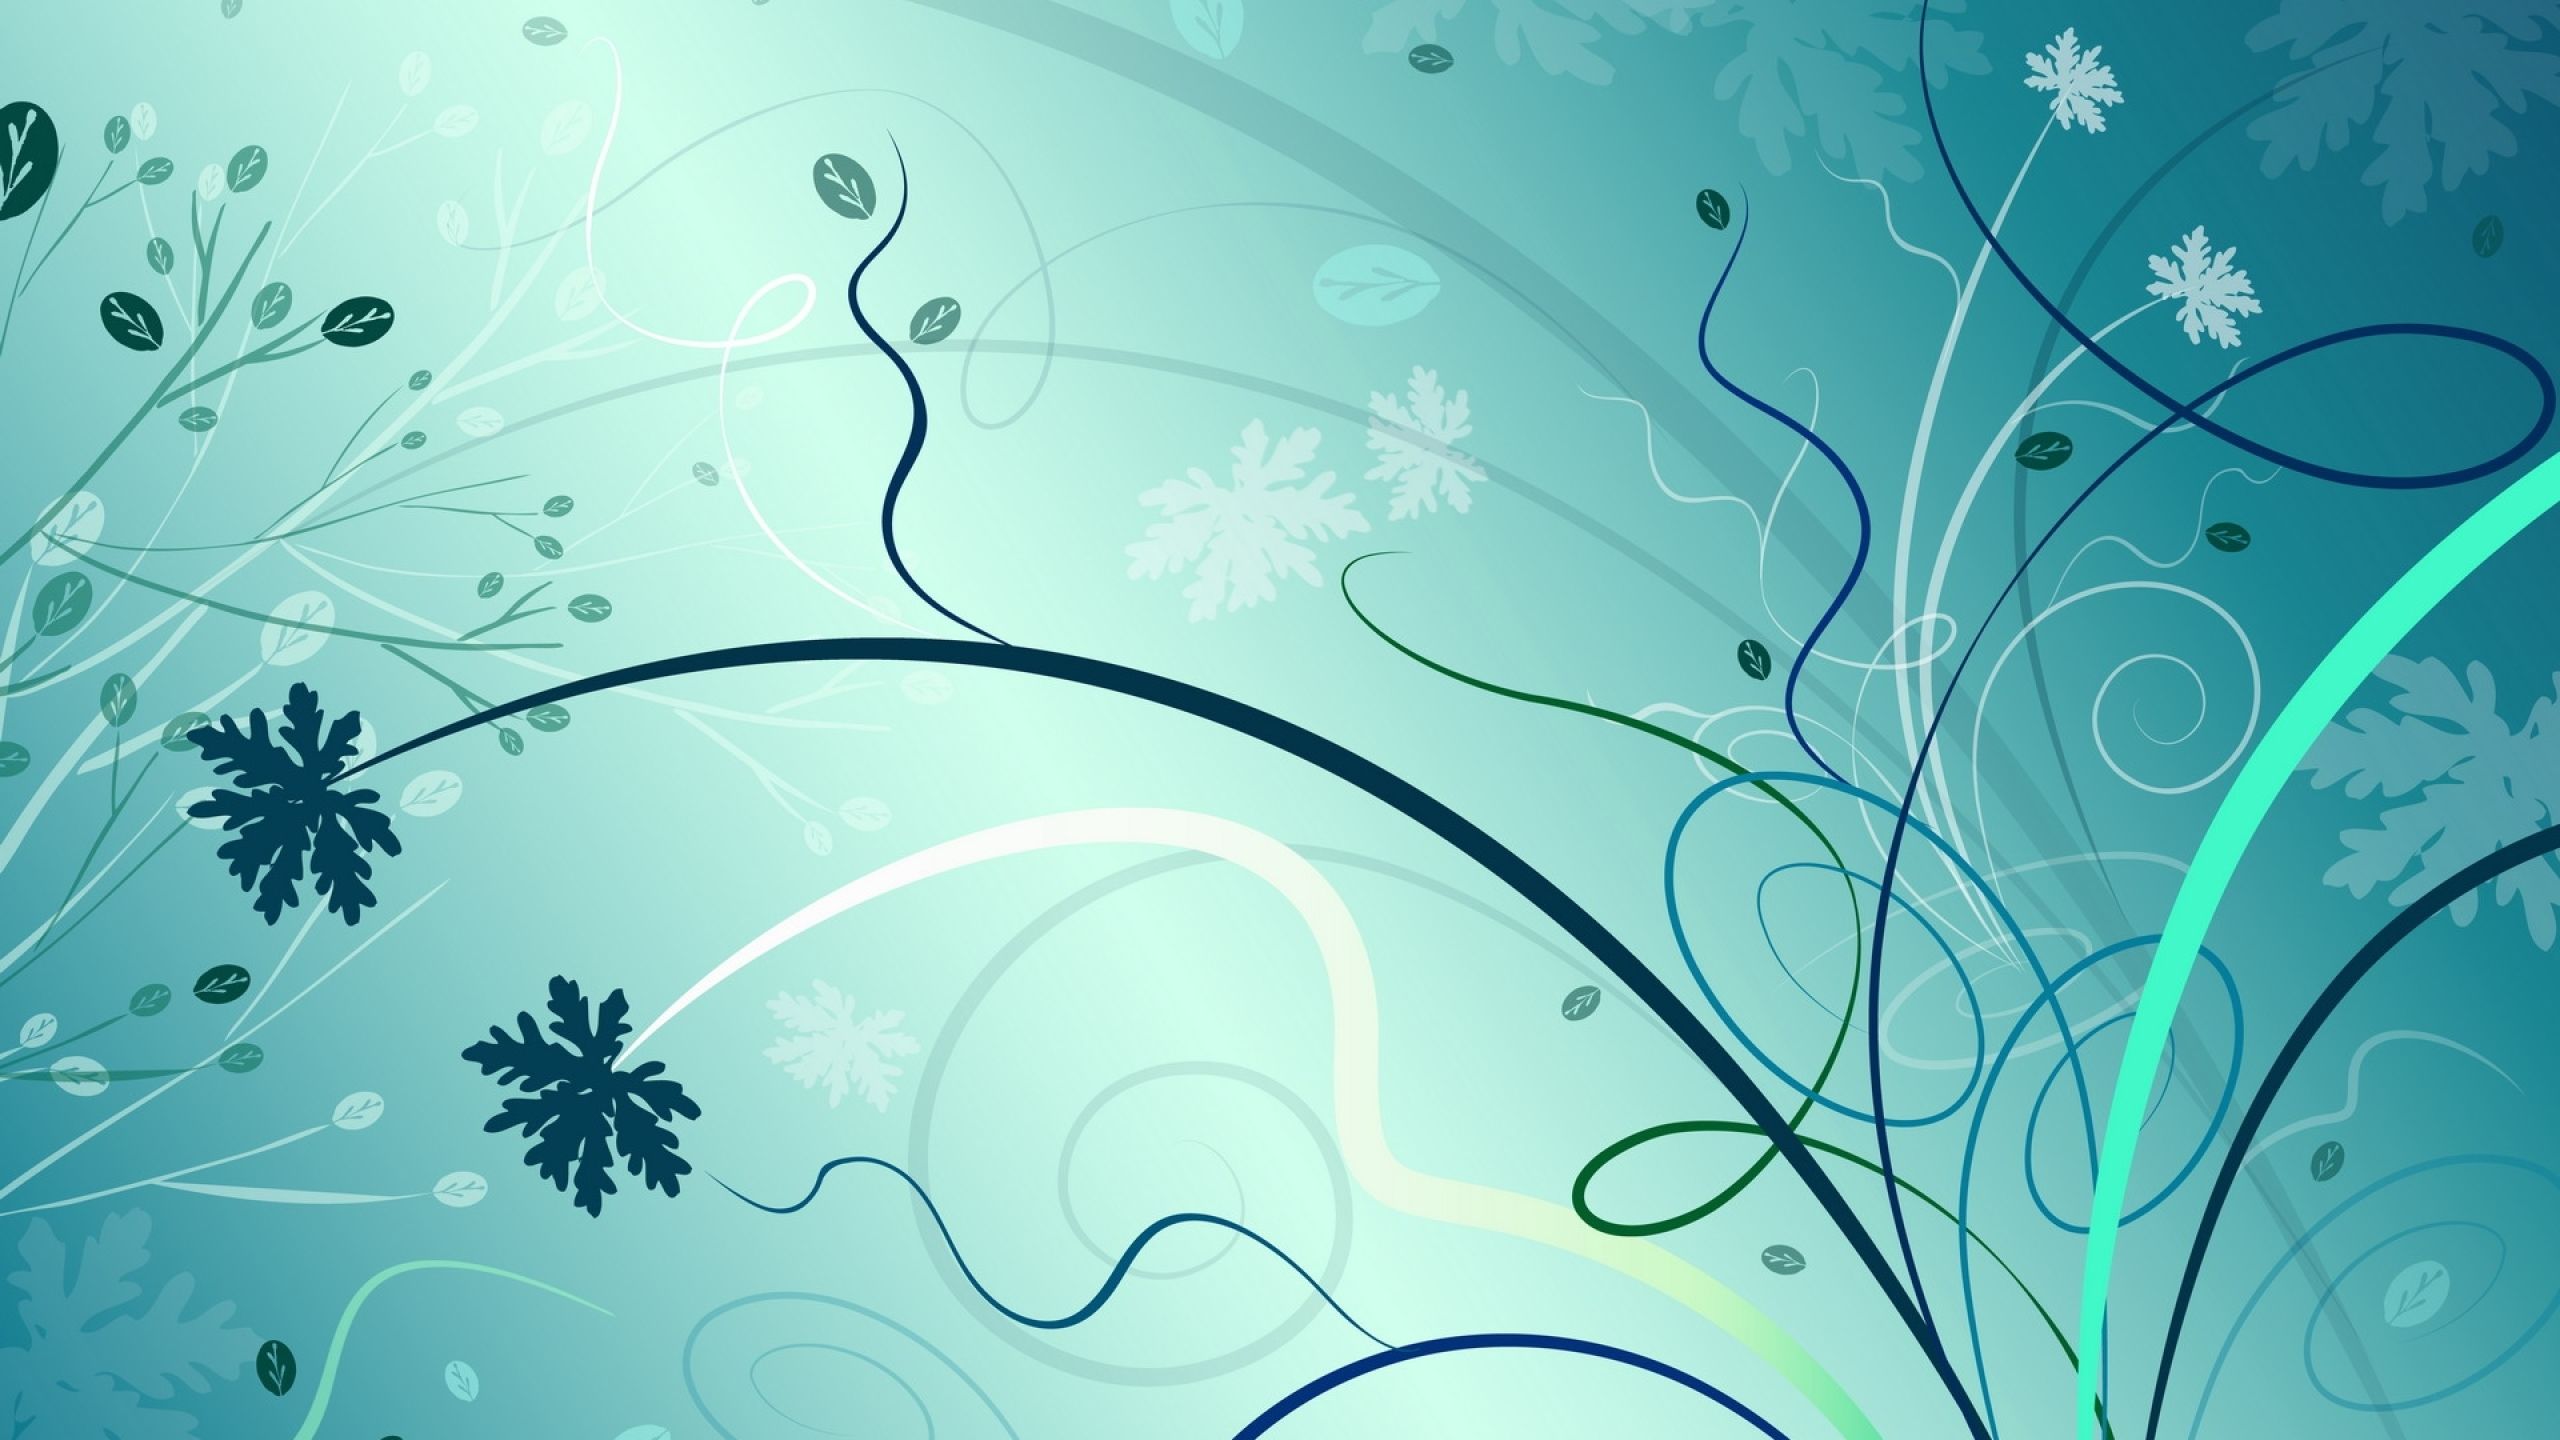 نقاشی دیجیتالی پرطرفدار آبی و سفید با طرح گل در طبیعت 